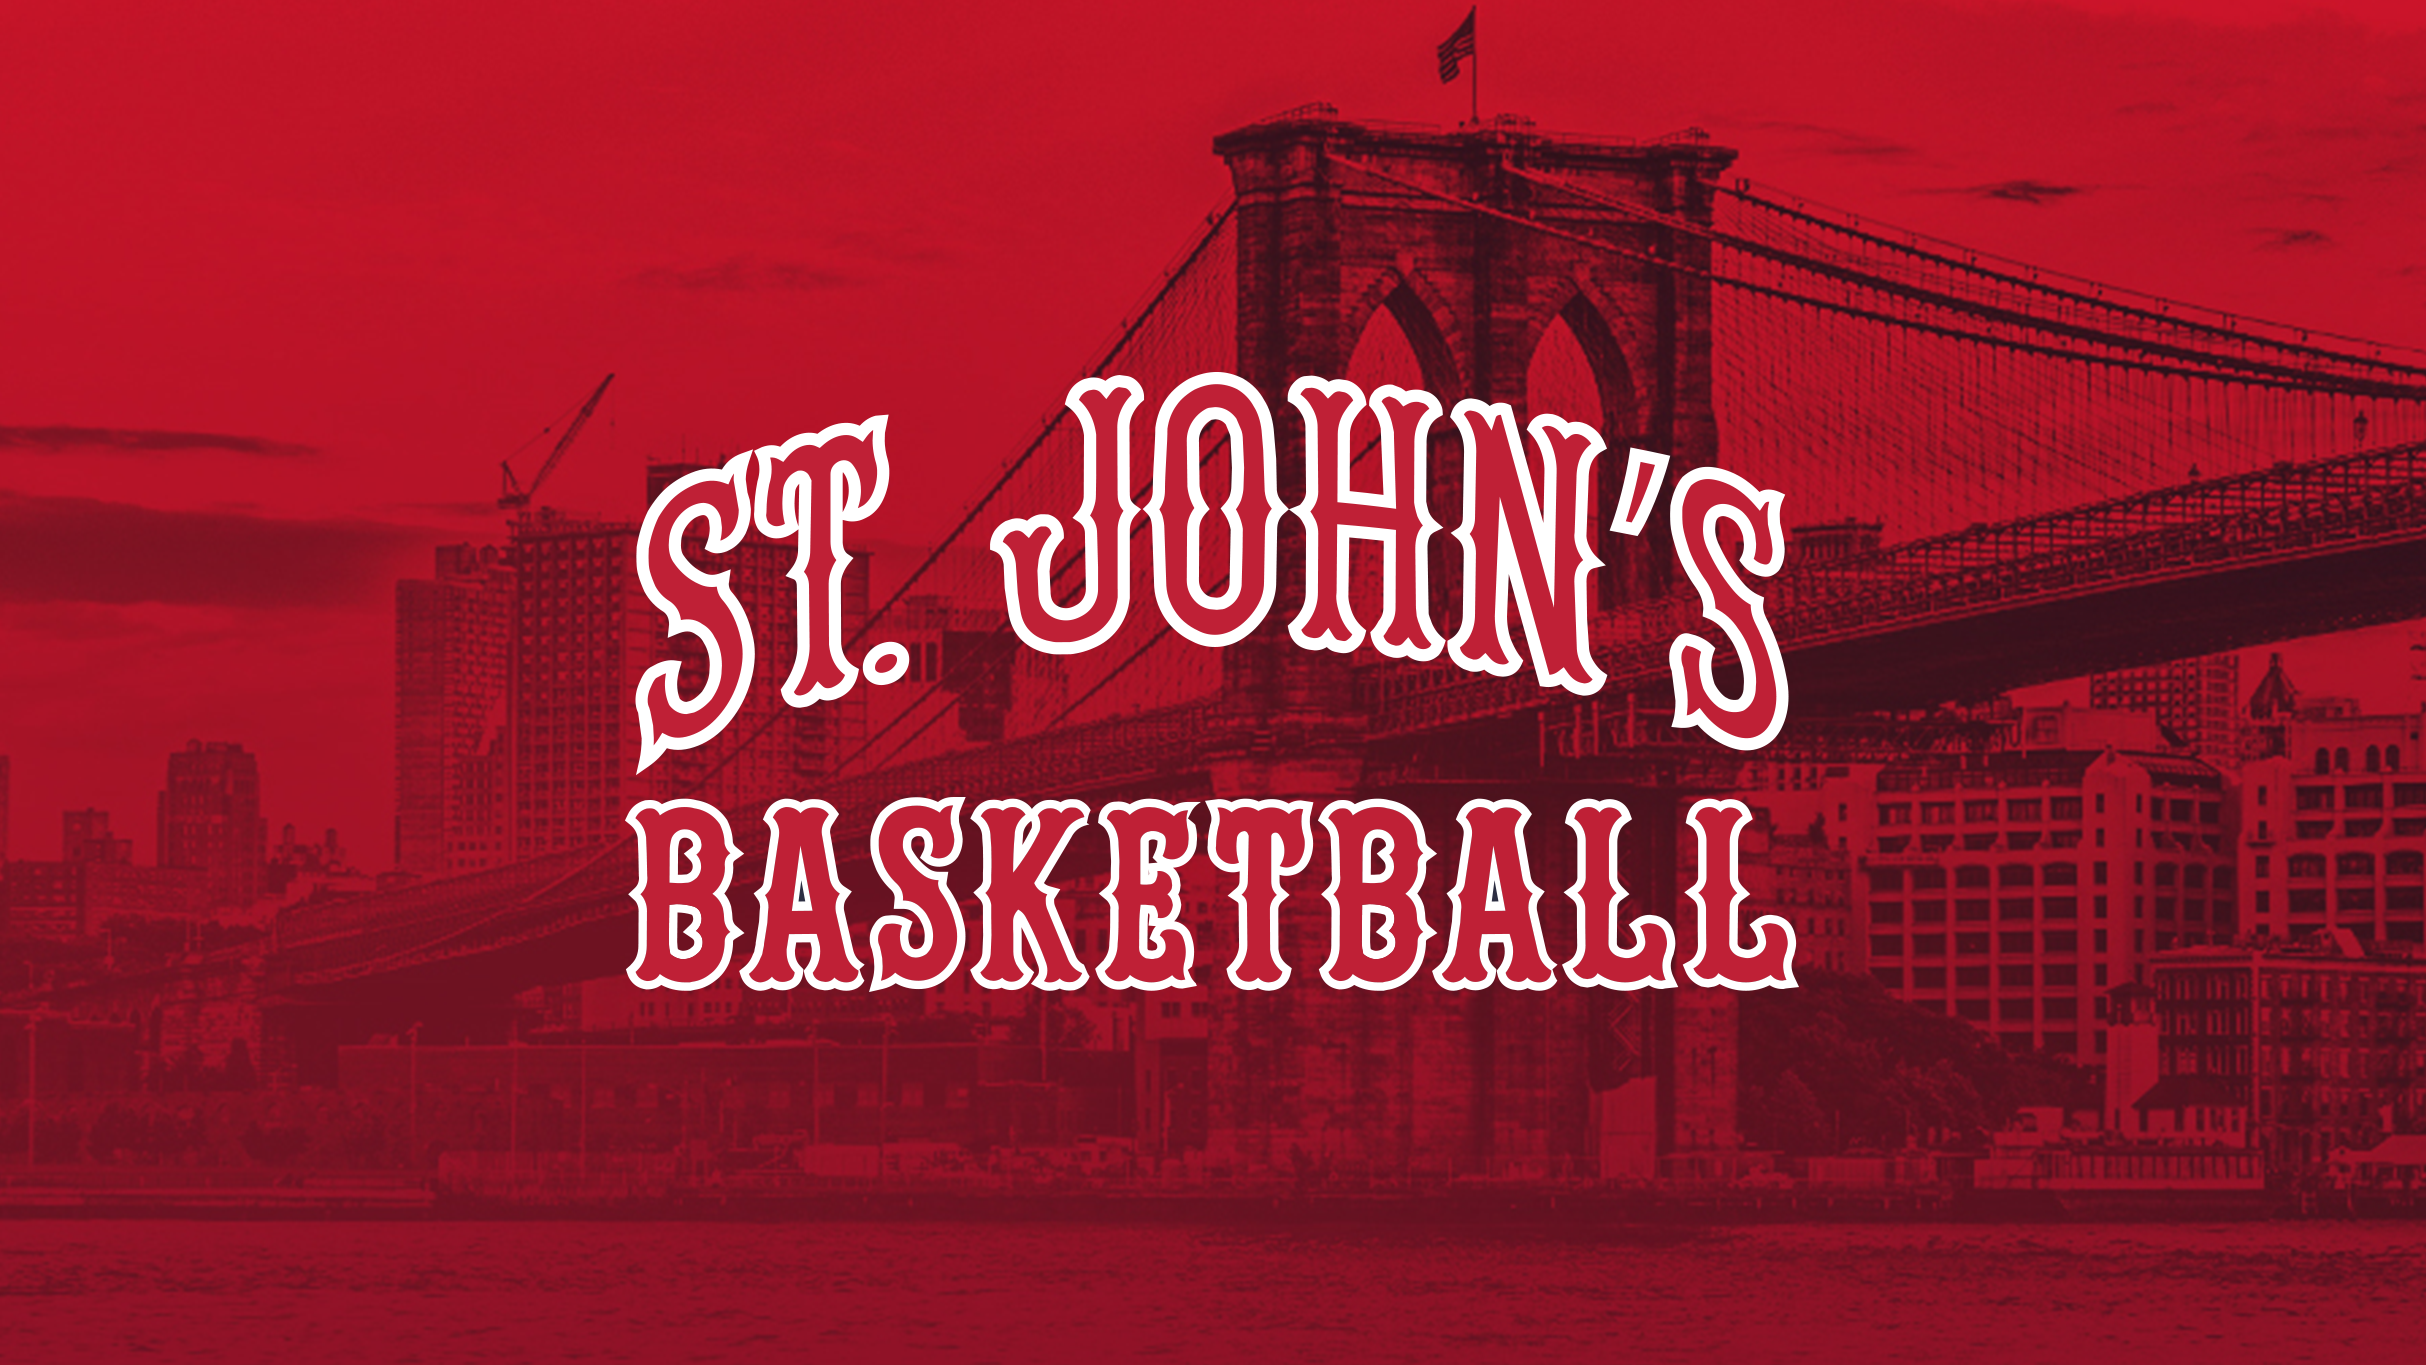 St. John's Red Storm Men's Basketball V. Villanova in New York promo photo for Venue presale offer code